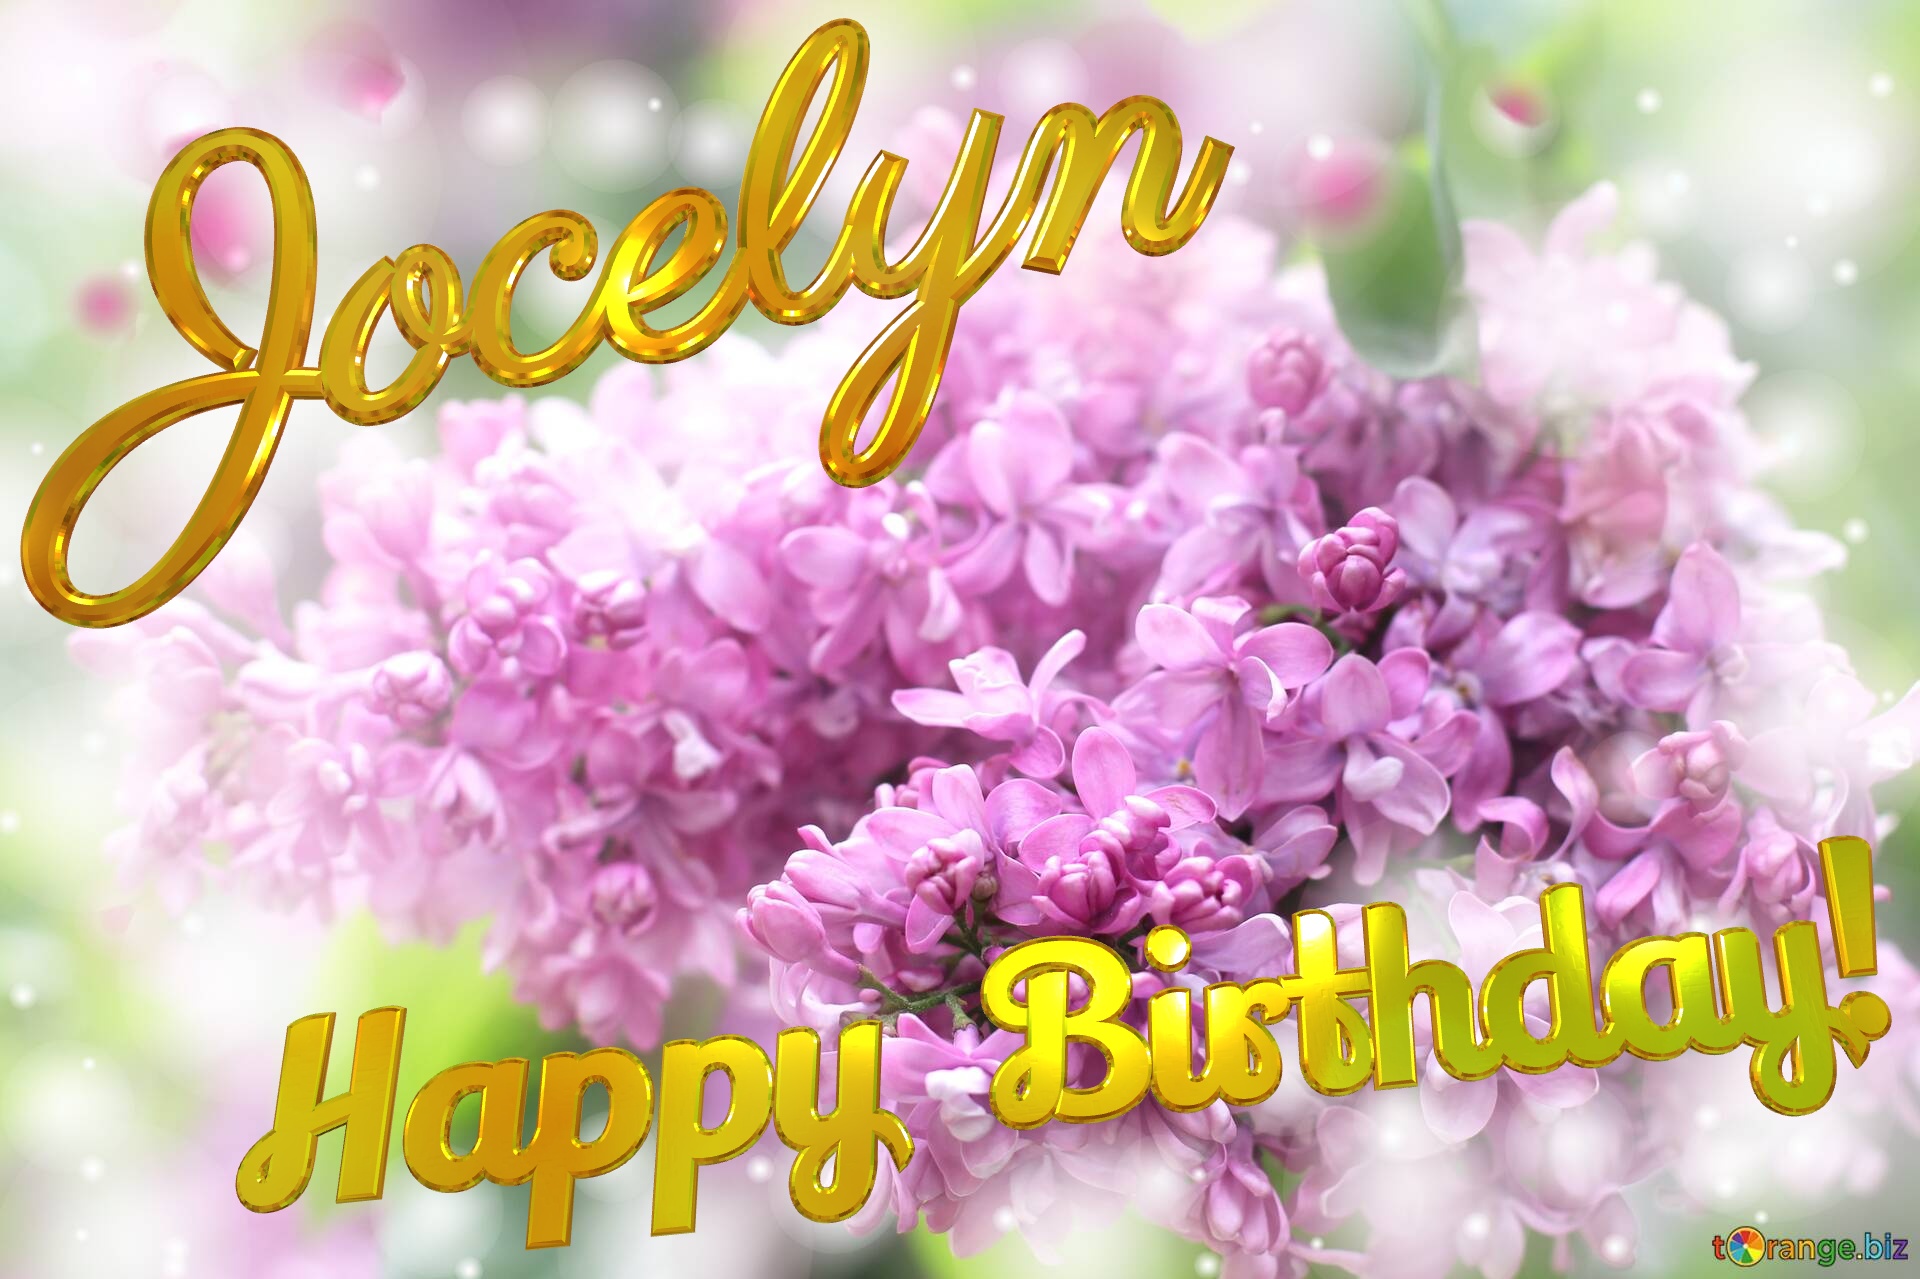 Jocelyn Happy Birthday! Lilac №0